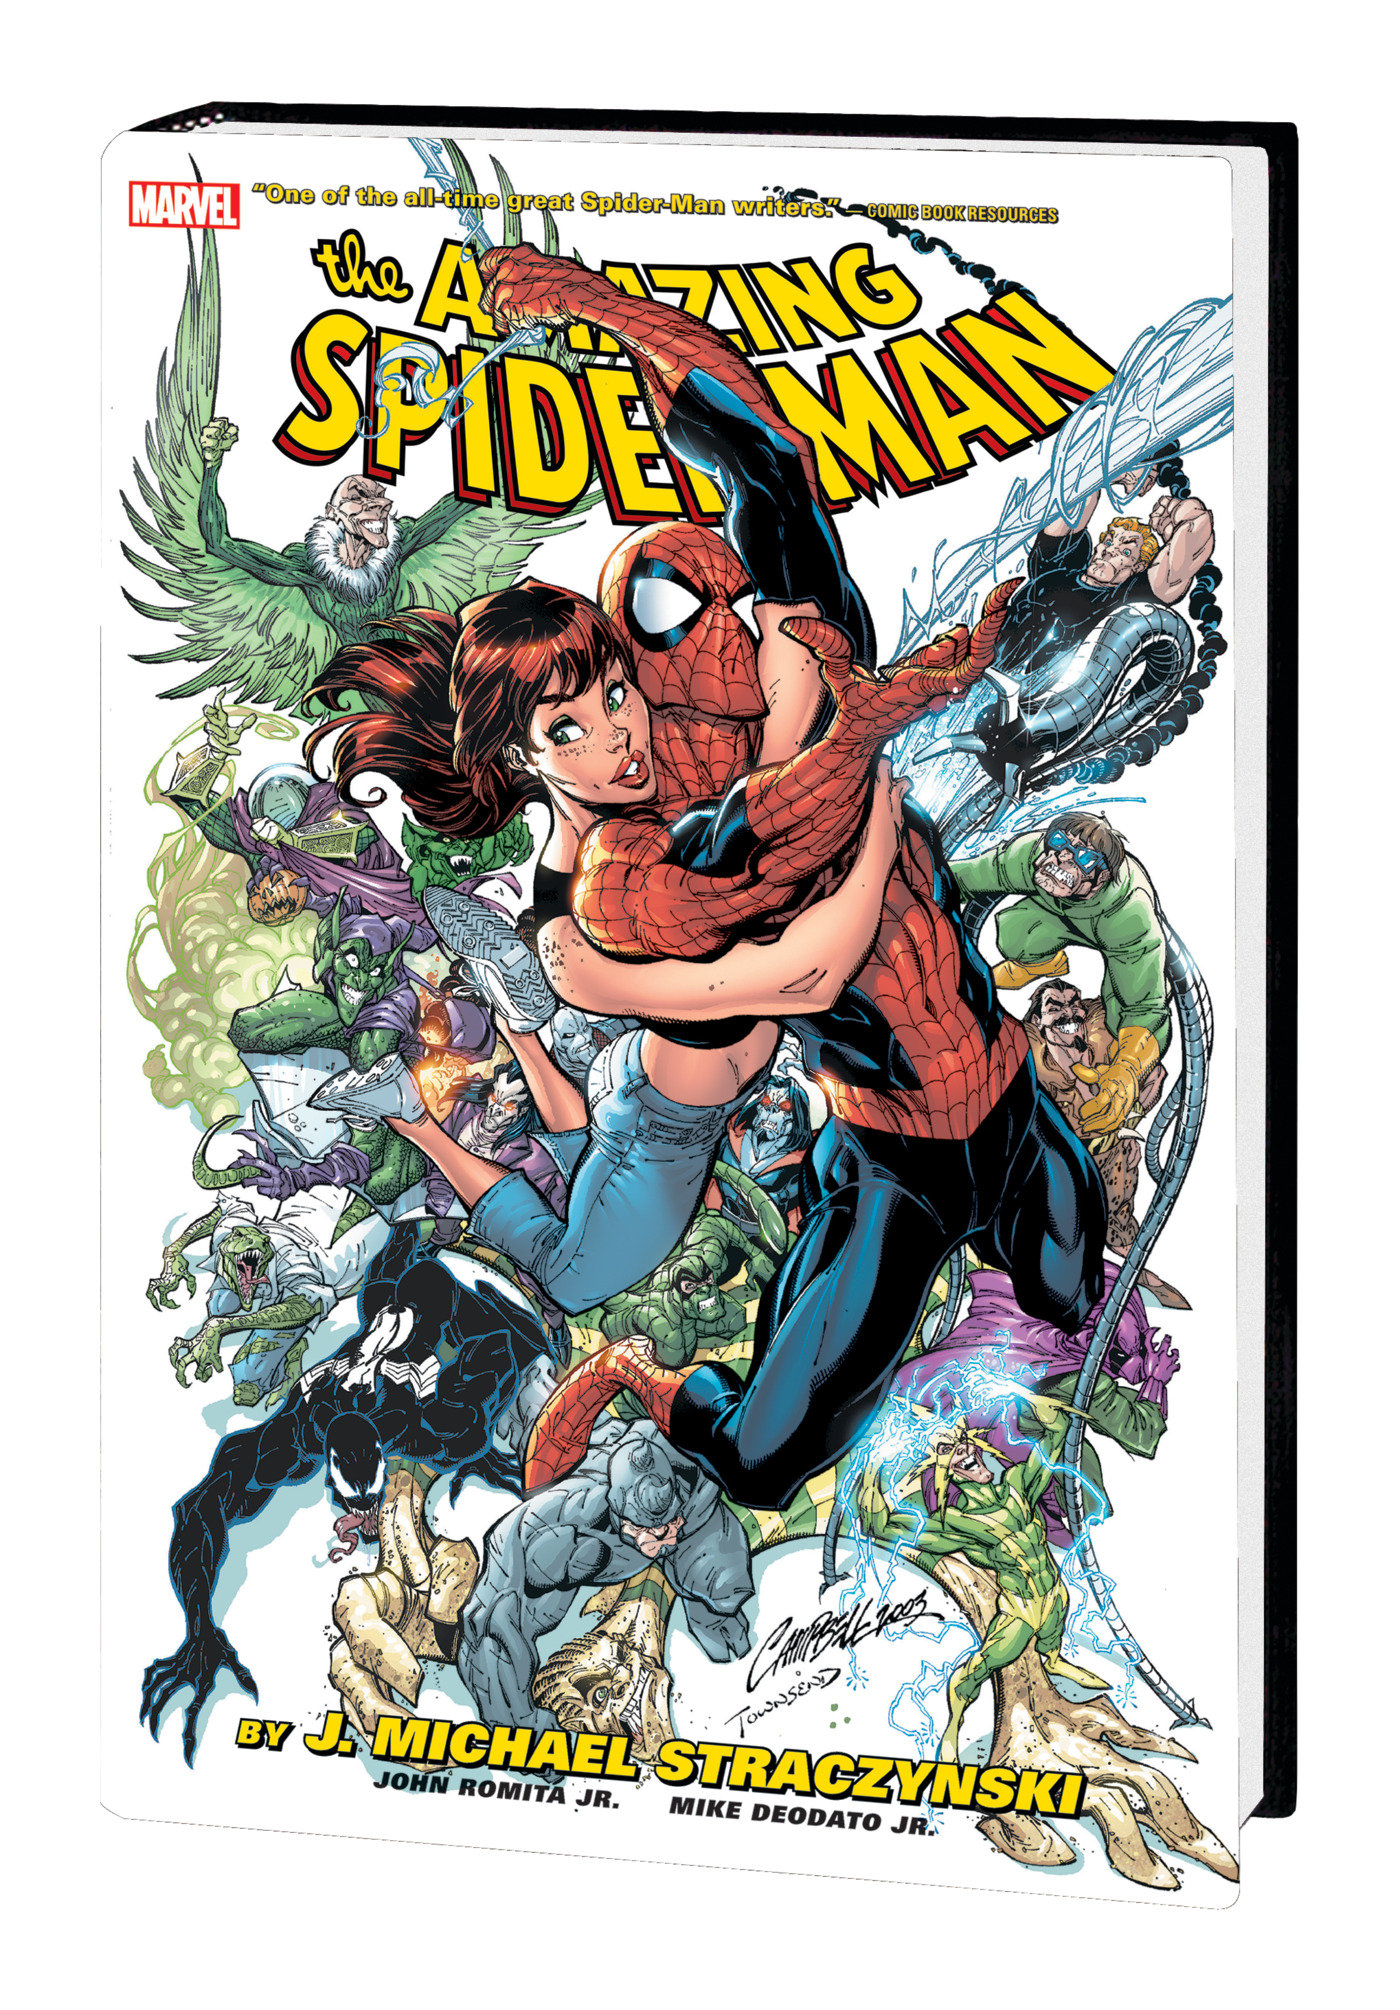 Amazing Spider-Man by J. Michael Straczynski Omnibus Hardcover Volume 1 (2022 Printing)